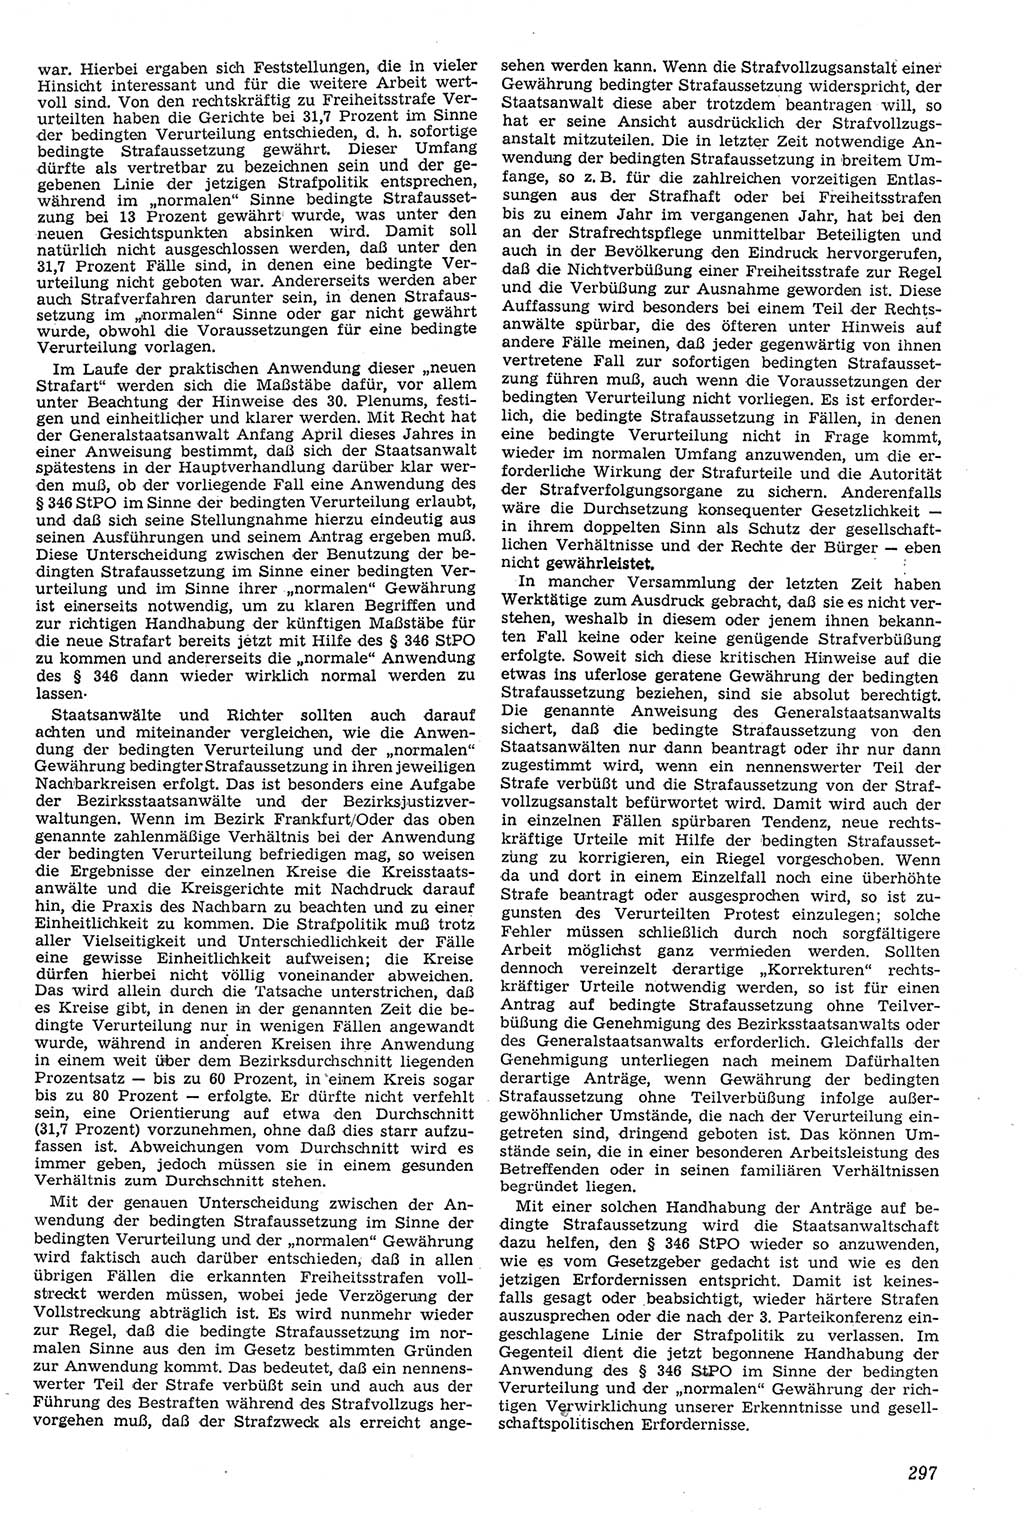 Neue Justiz (NJ), Zeitschrift für Recht und Rechtswissenschaft [Deutsche Demokratische Republik (DDR)], 11. Jahrgang 1957, Seite 297 (NJ DDR 1957, S. 297)